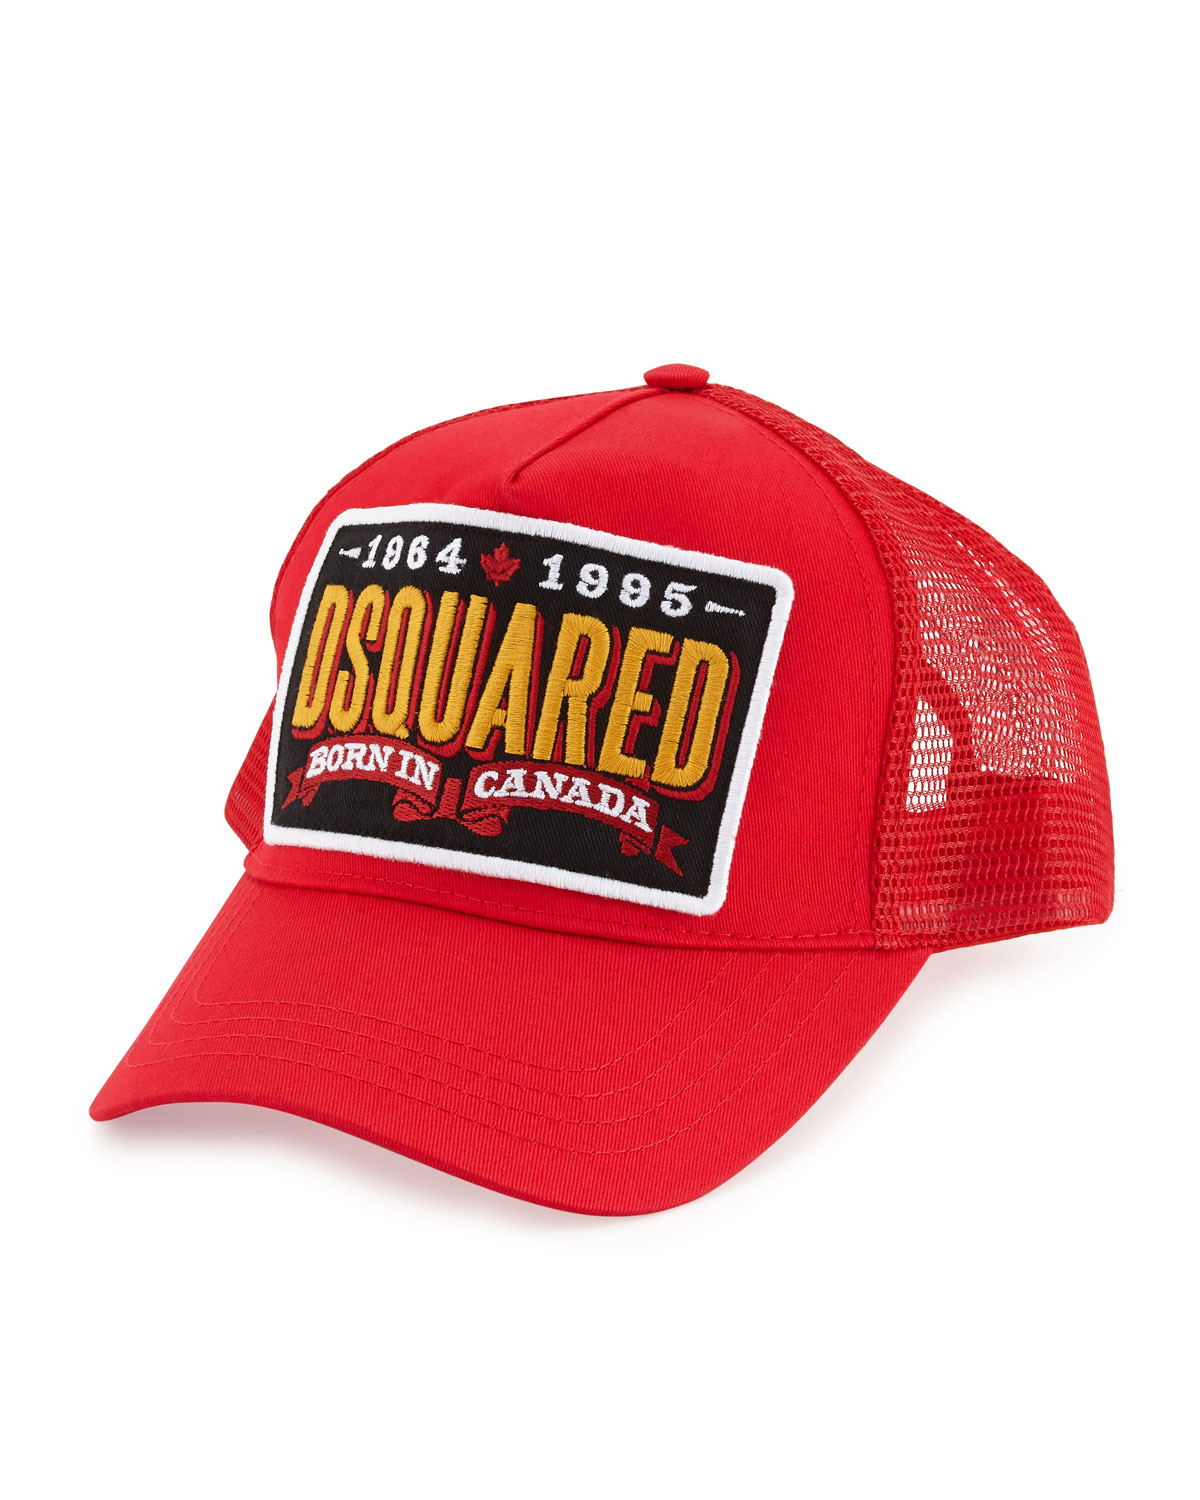 dsquared2 cap red